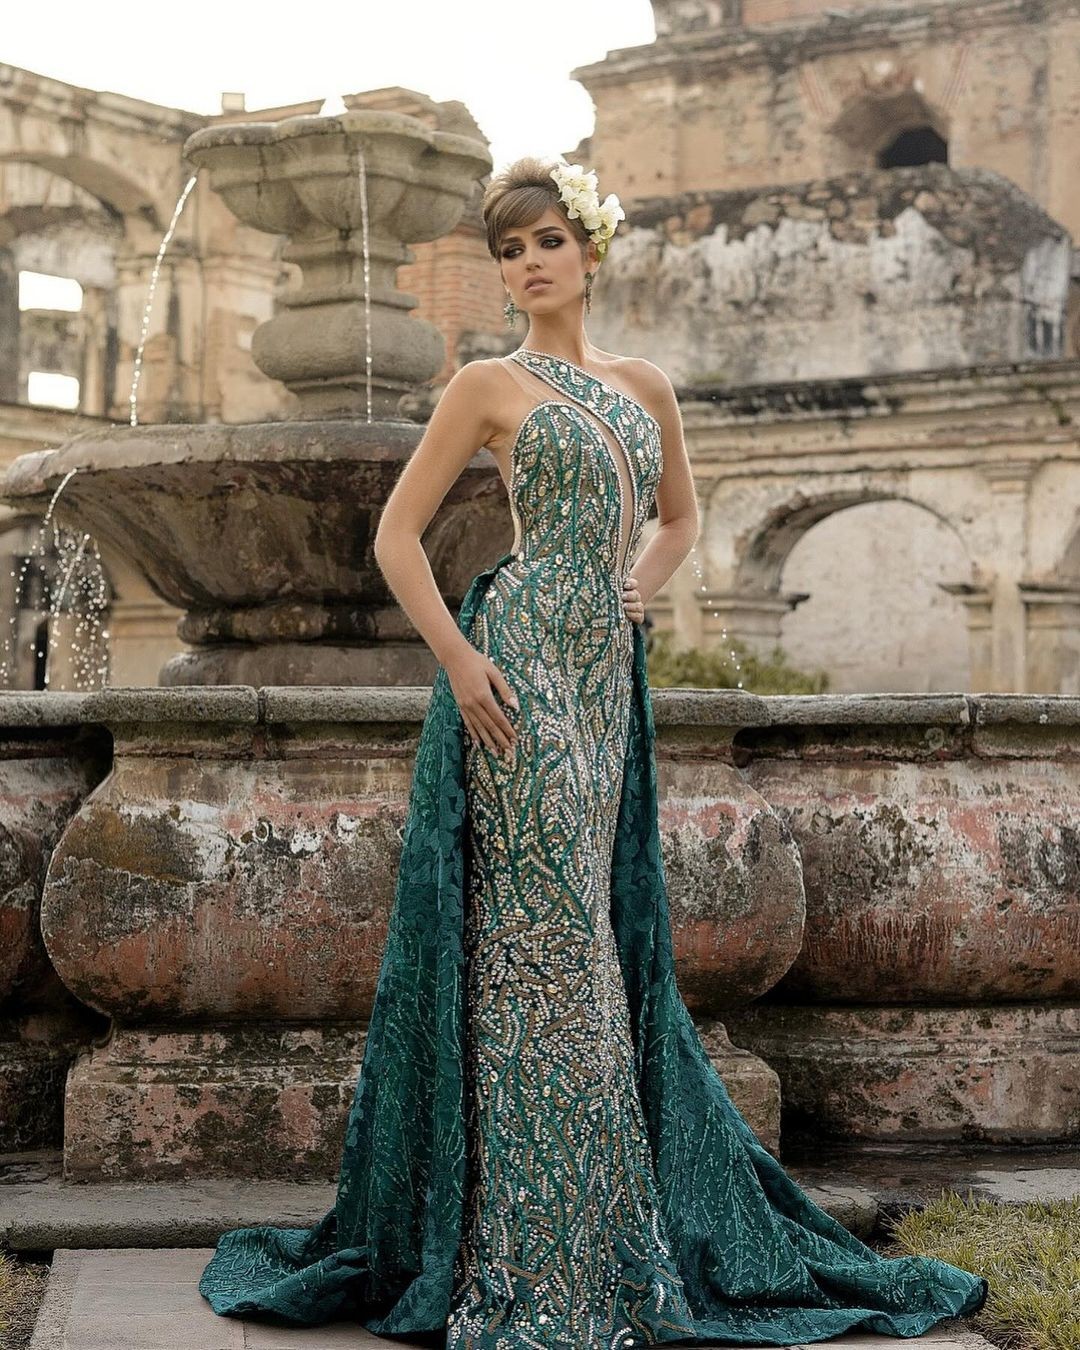 Tân Hoa hậu Hòa bình Guatemala bị chê già nua